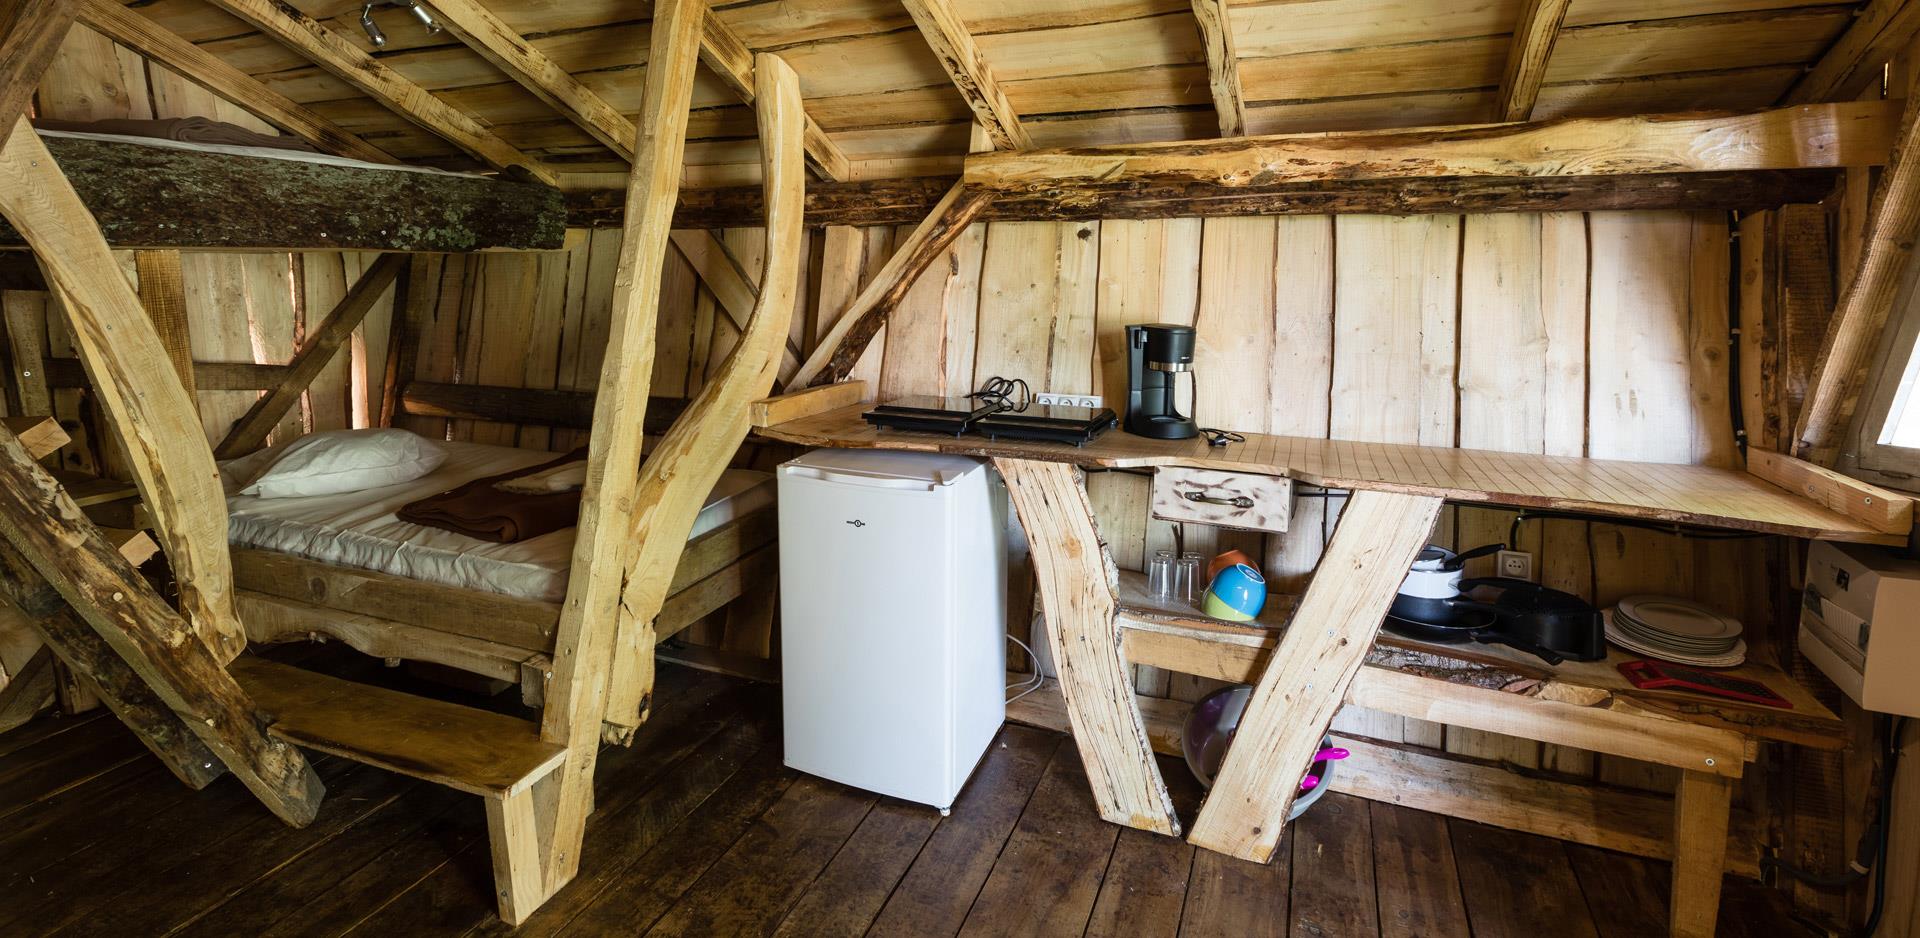 Verhuur van bijzondere accommodatie in de Elzas: beeld van een keukenhoek in een bijzondere accommodatie